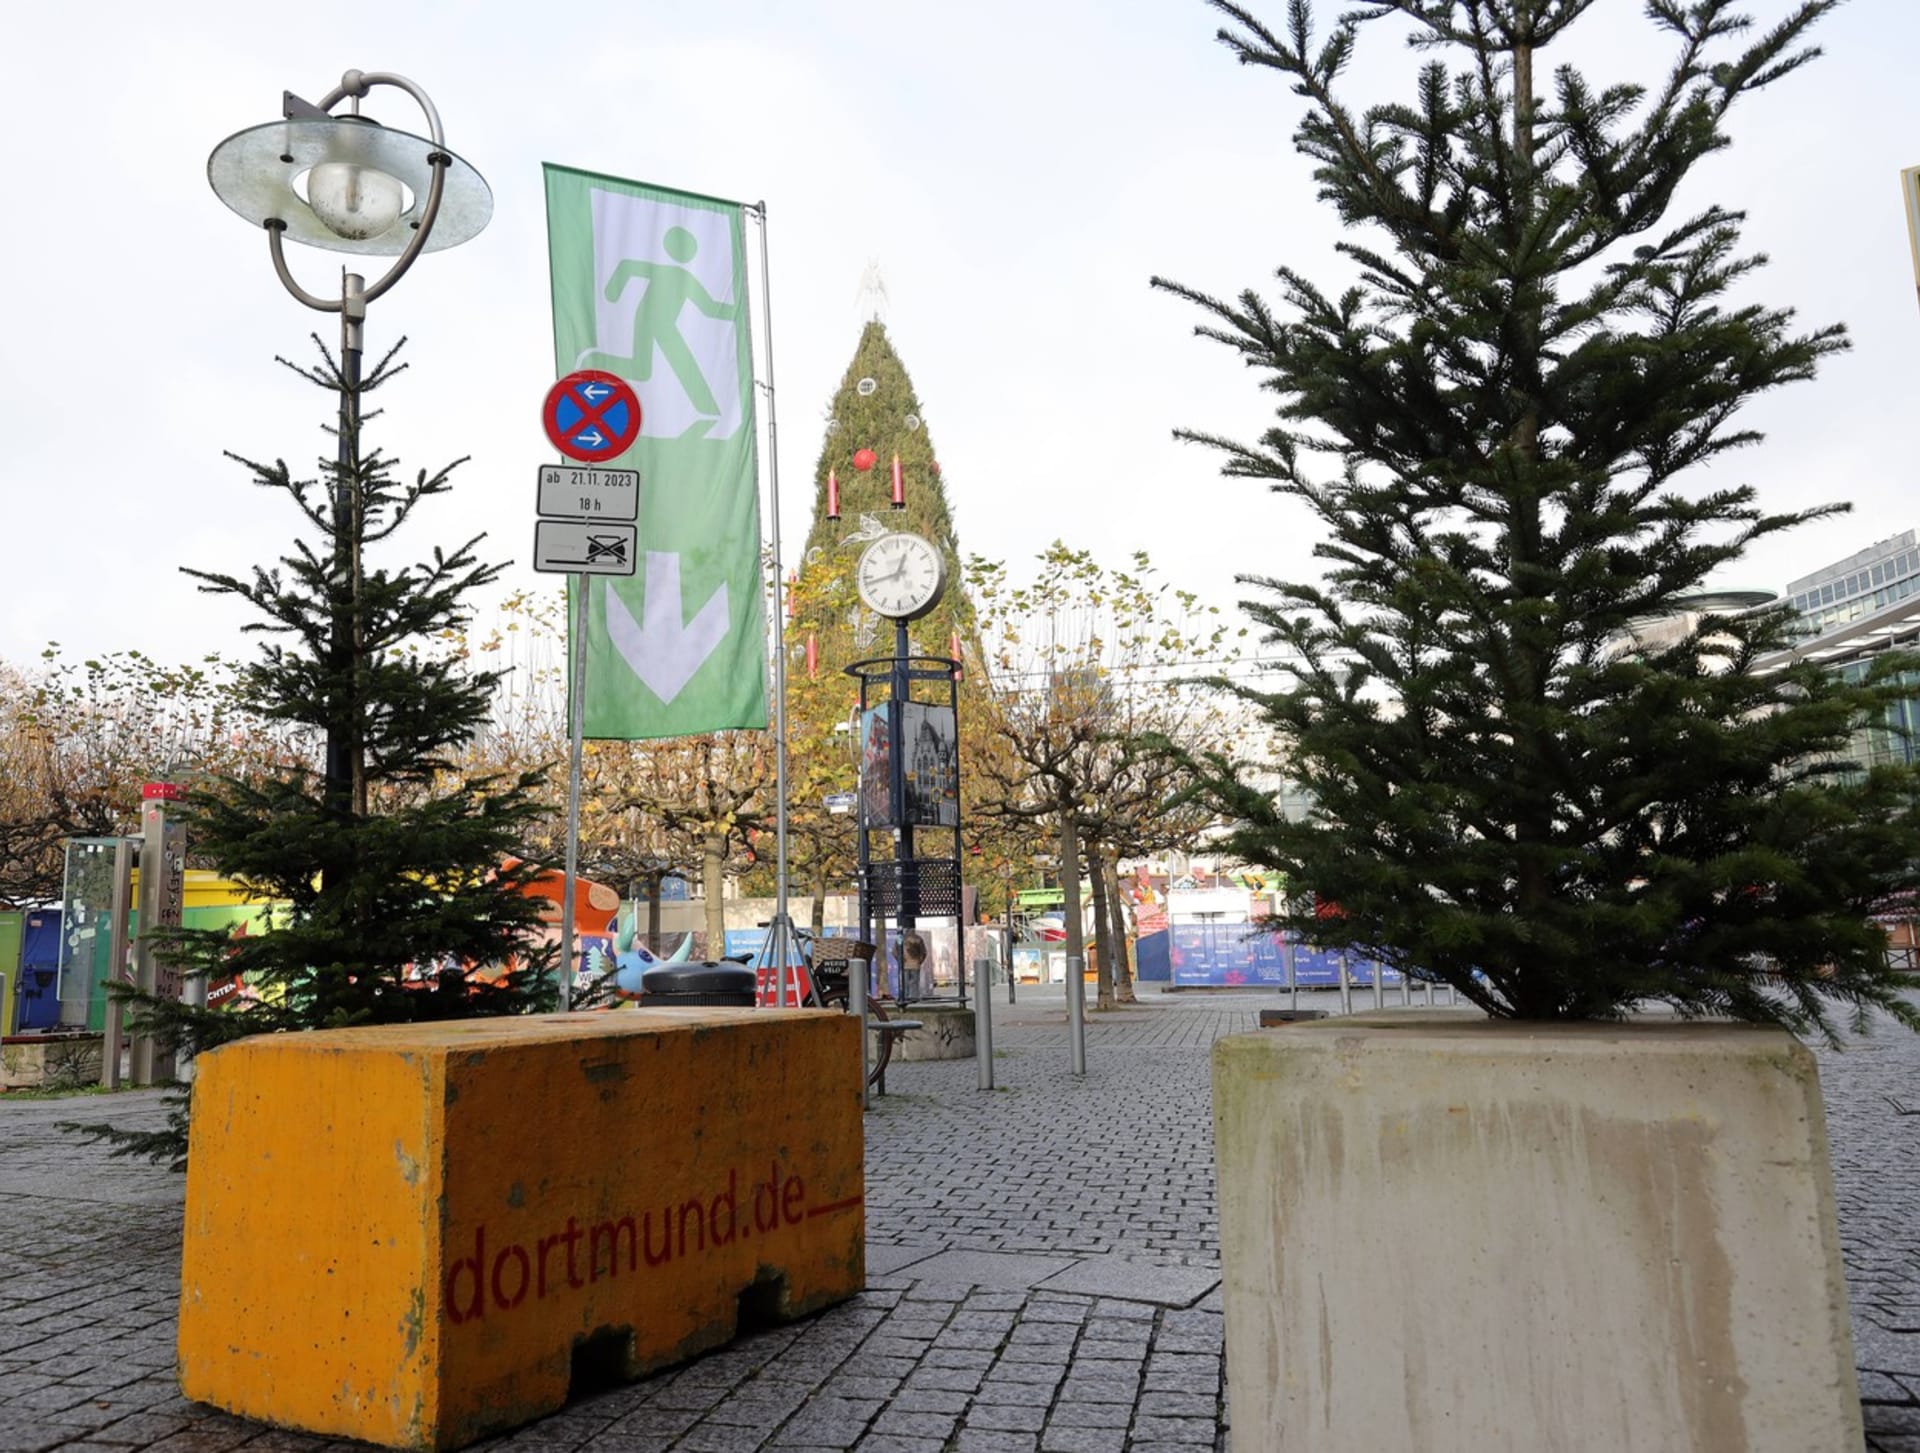 Betonové zátarasy chrání také vánoční trhy v Dortmundu